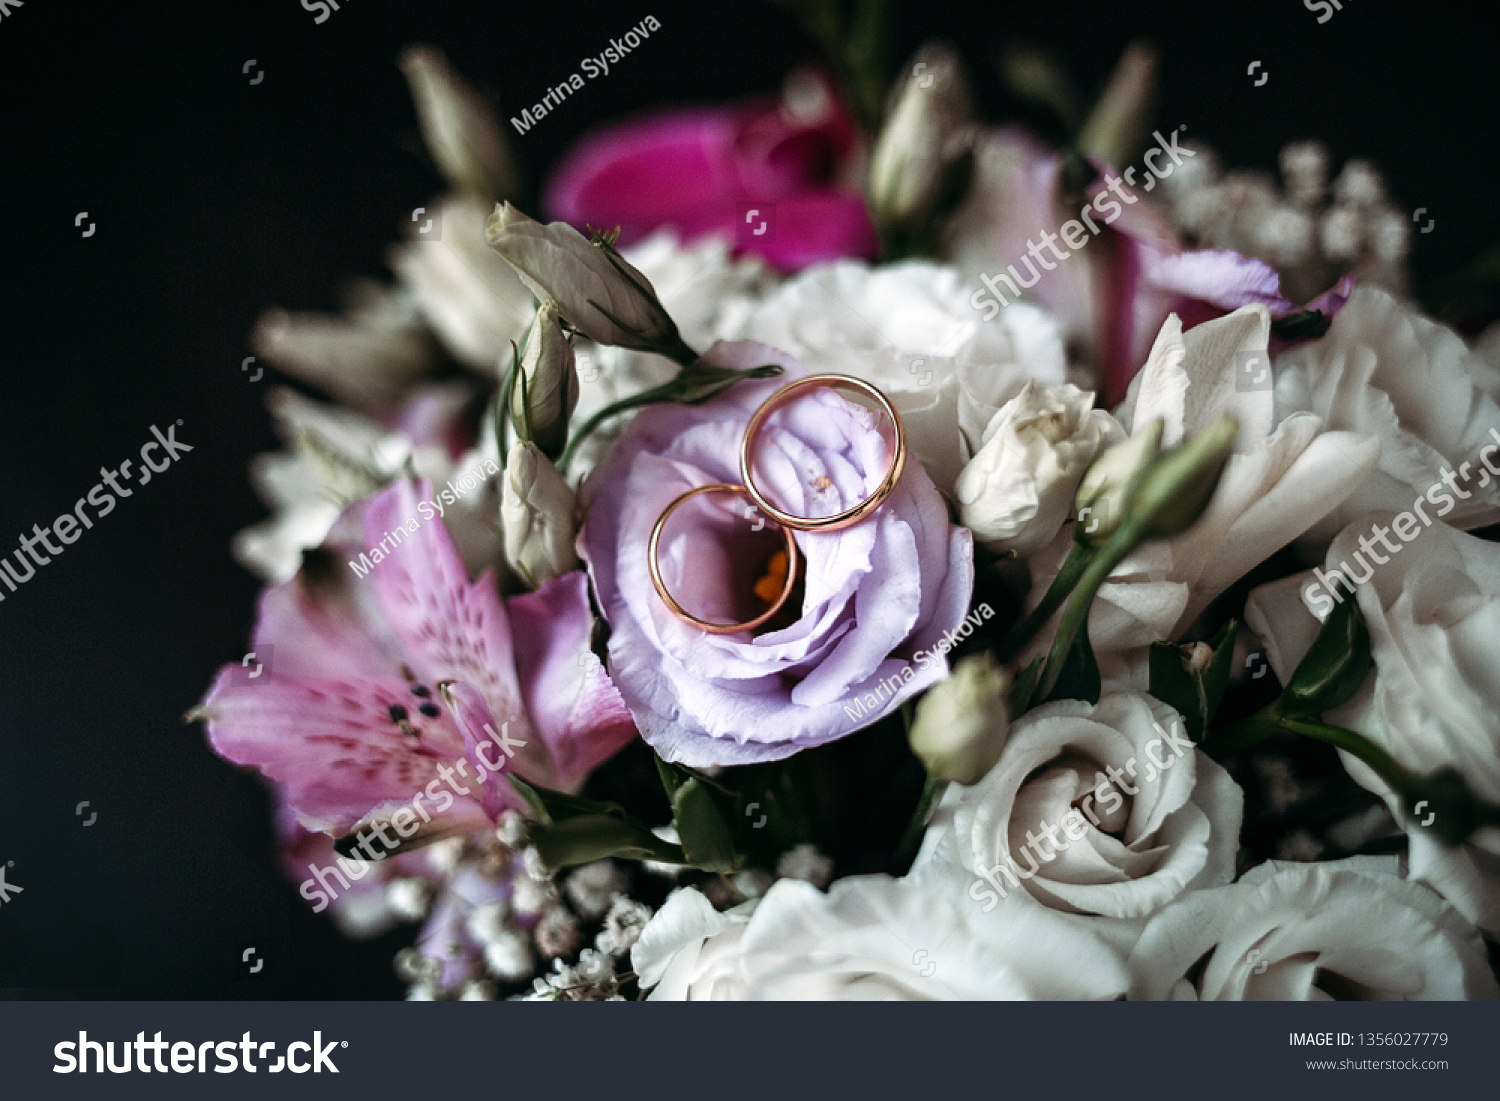 Wedding bridal bouquet #1356027779